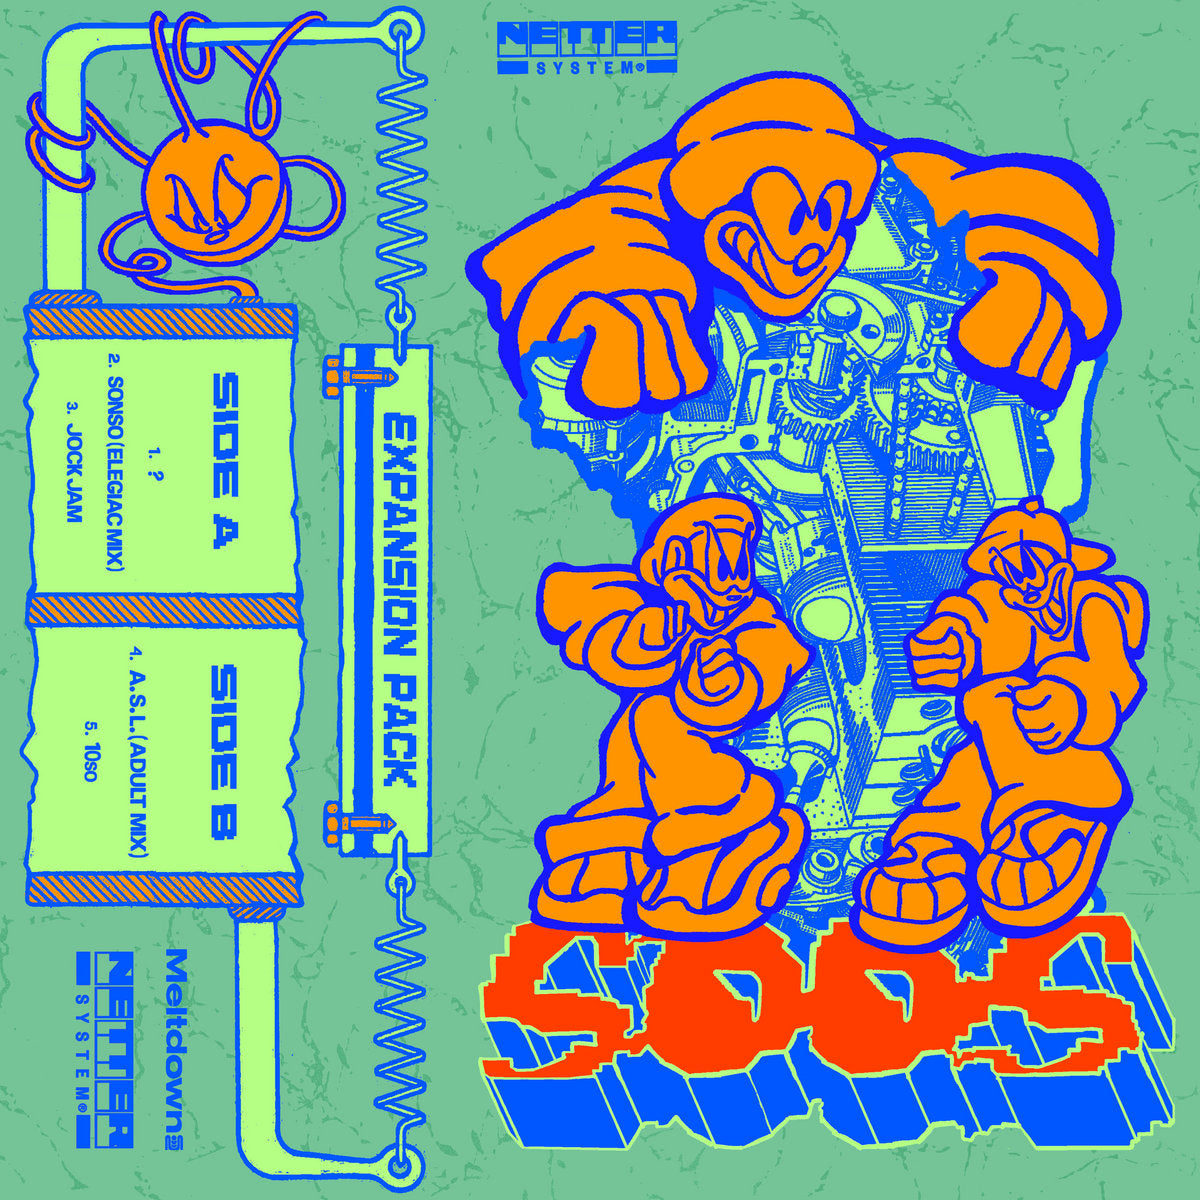 Netter System 004 - SOOS cassette tape